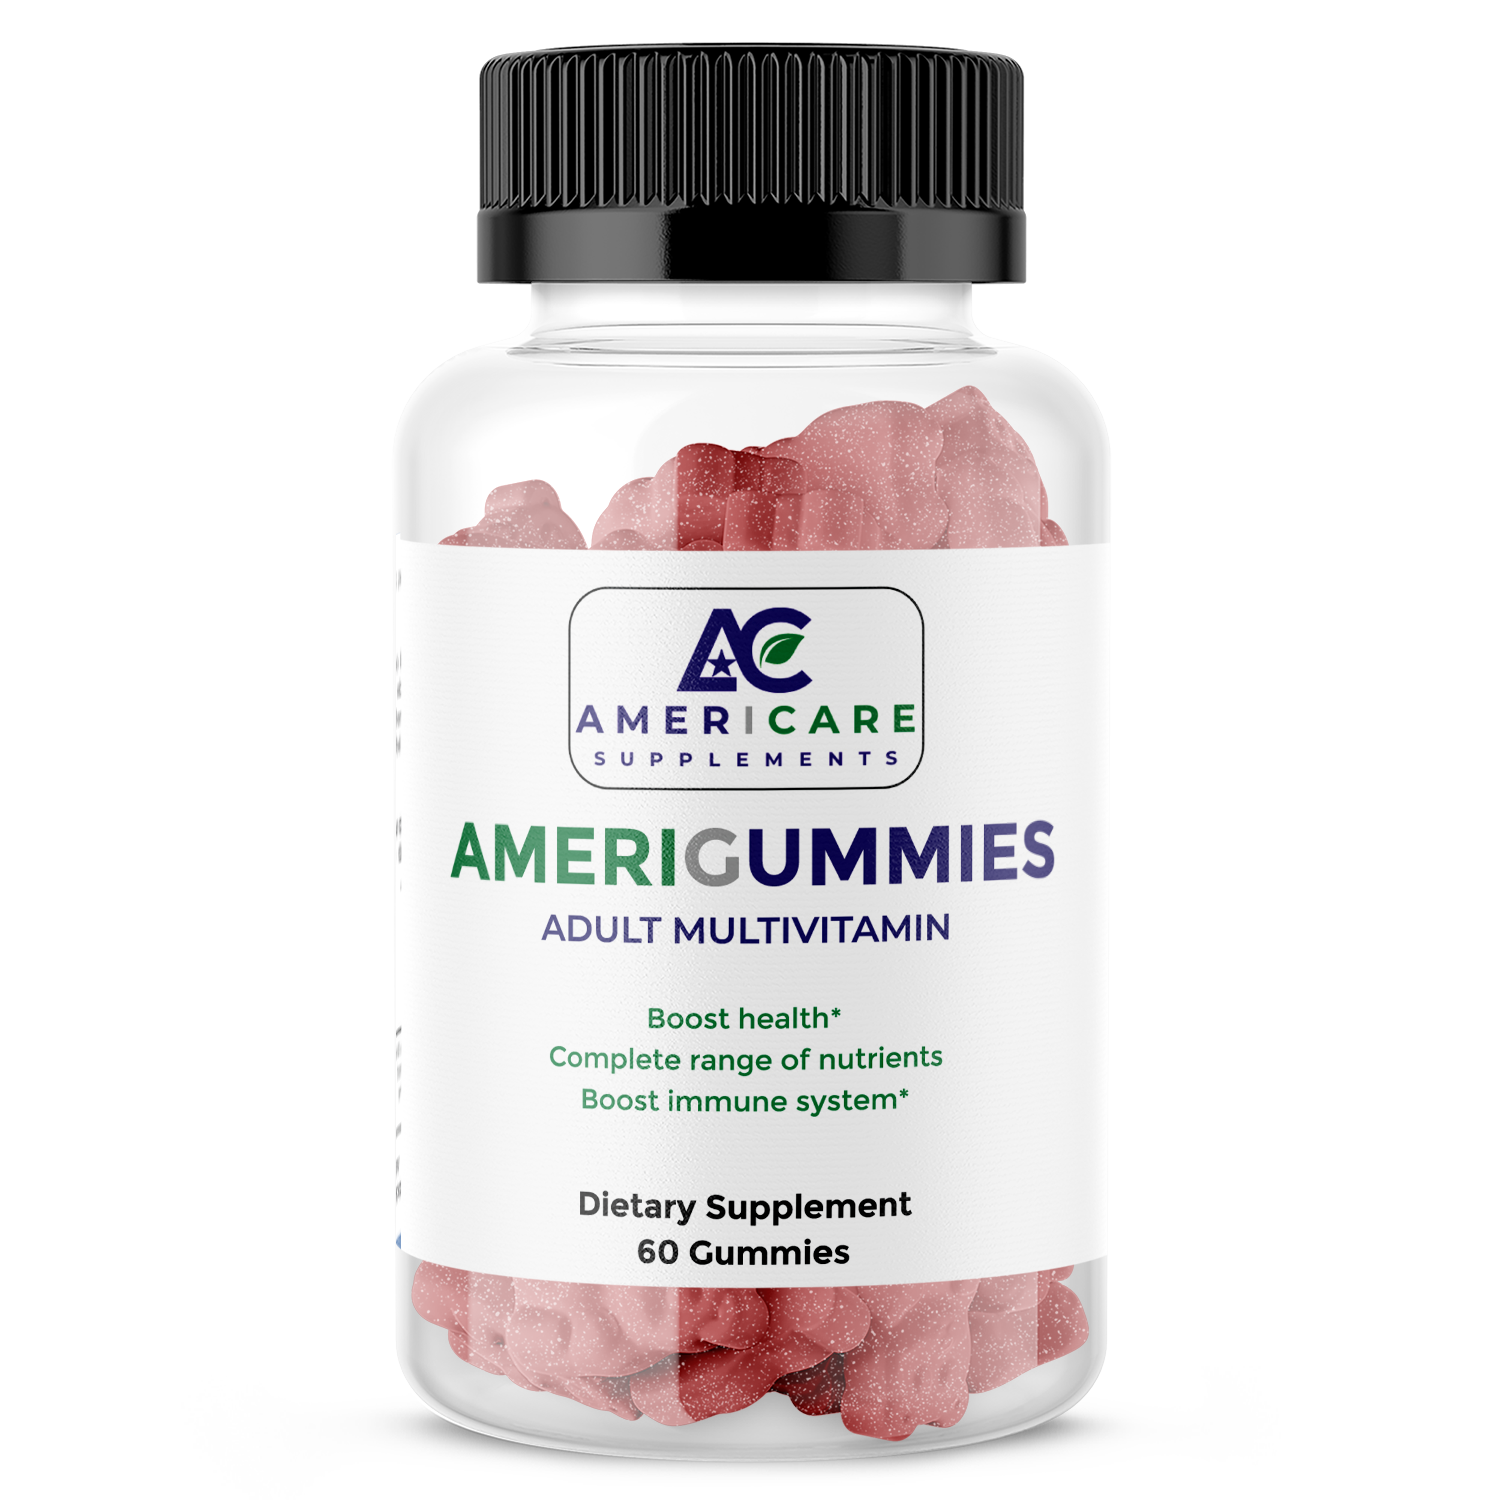 AMERIGUMMIES ADULT MULTIVITAMIN - Americare Supplements